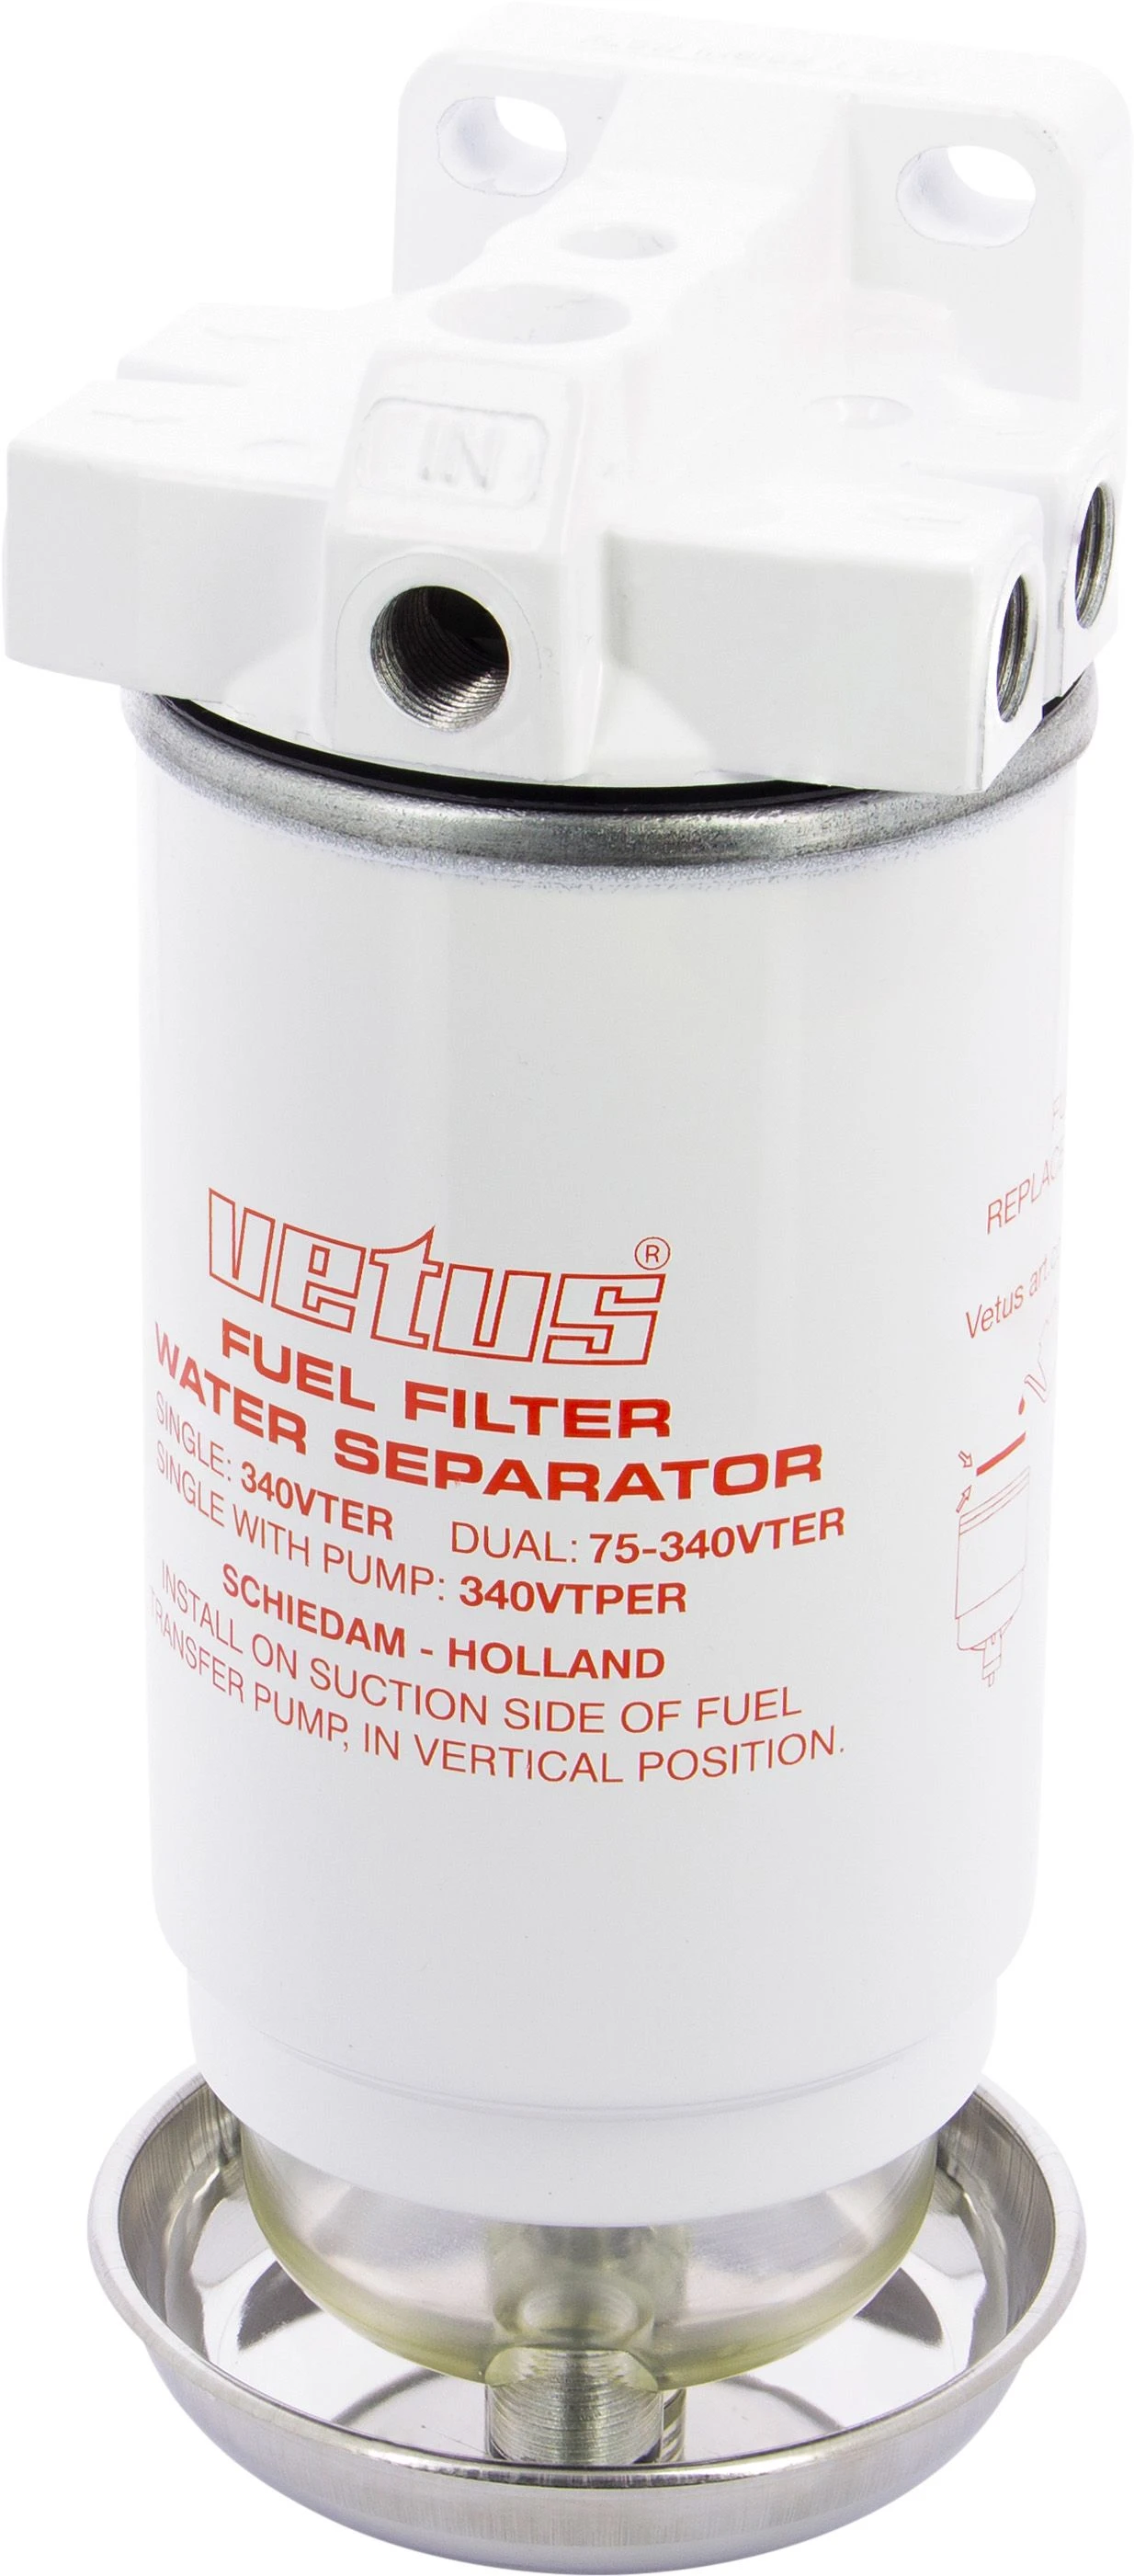 Water sep/diesel filter